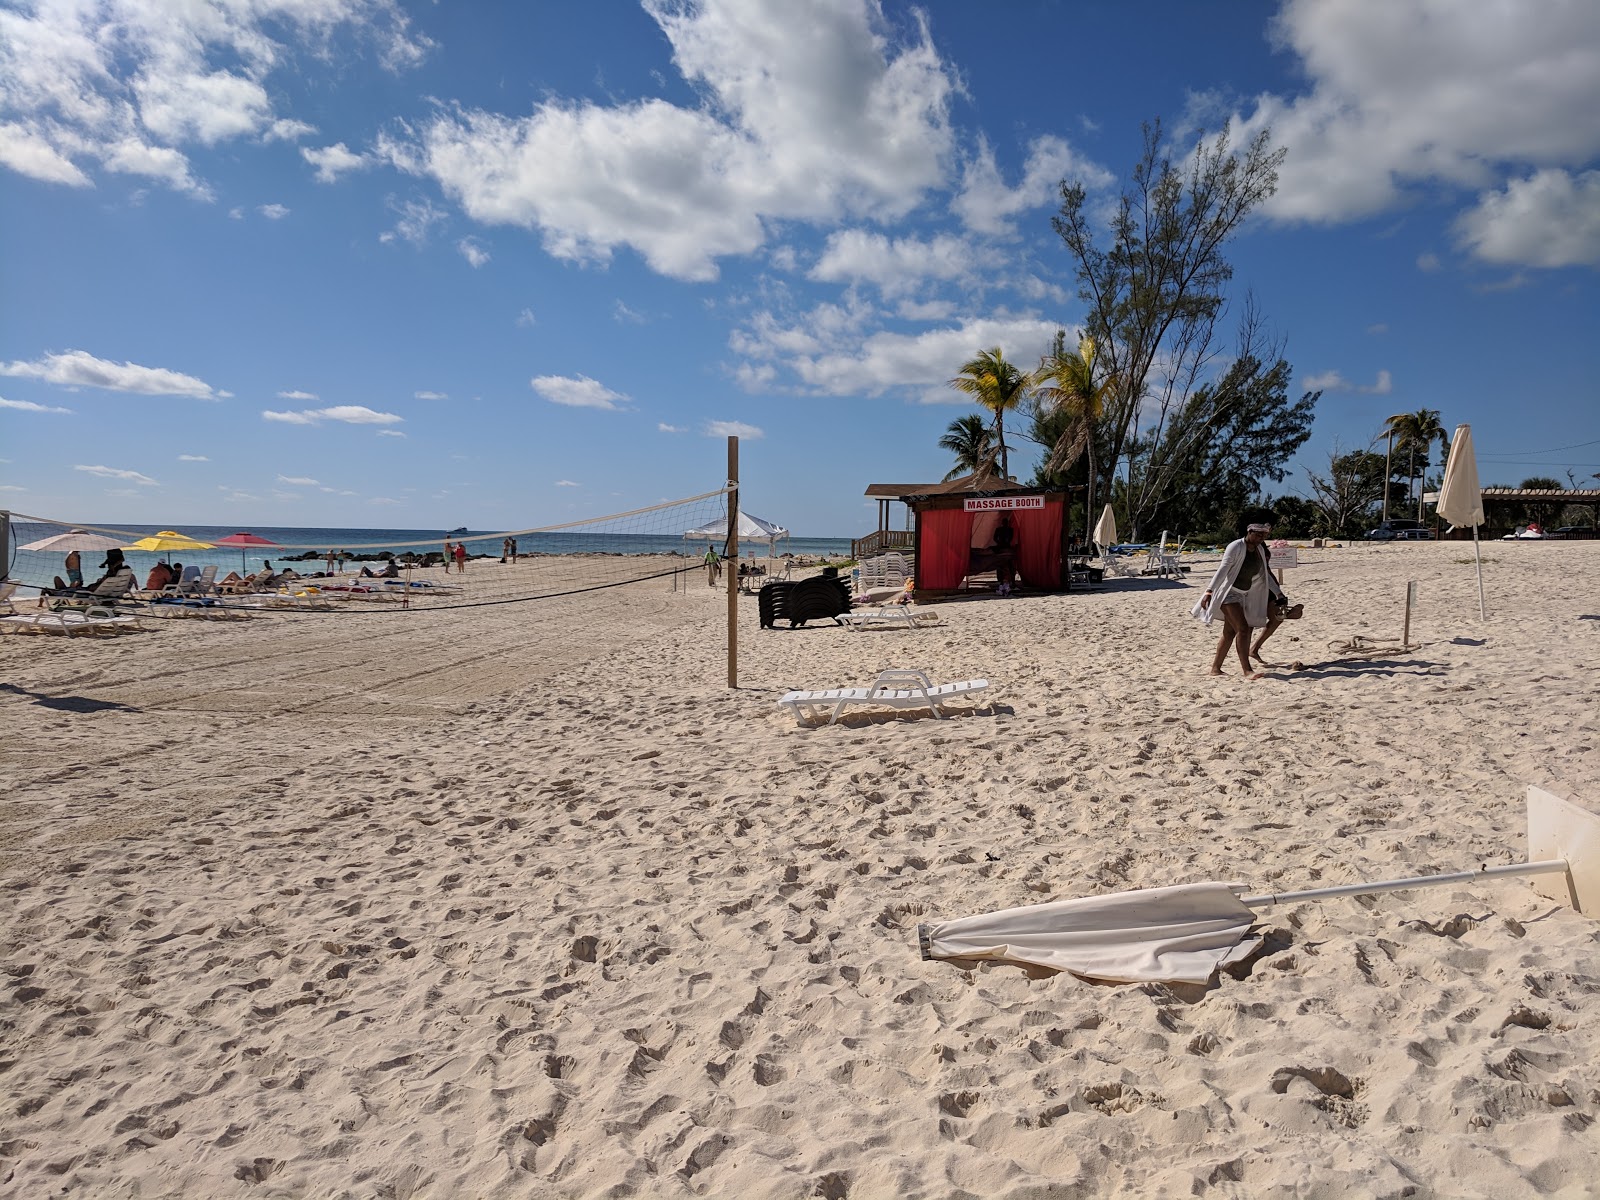 Zdjęcie Taino beach II - popularne miejsce wśród znawców relaksu